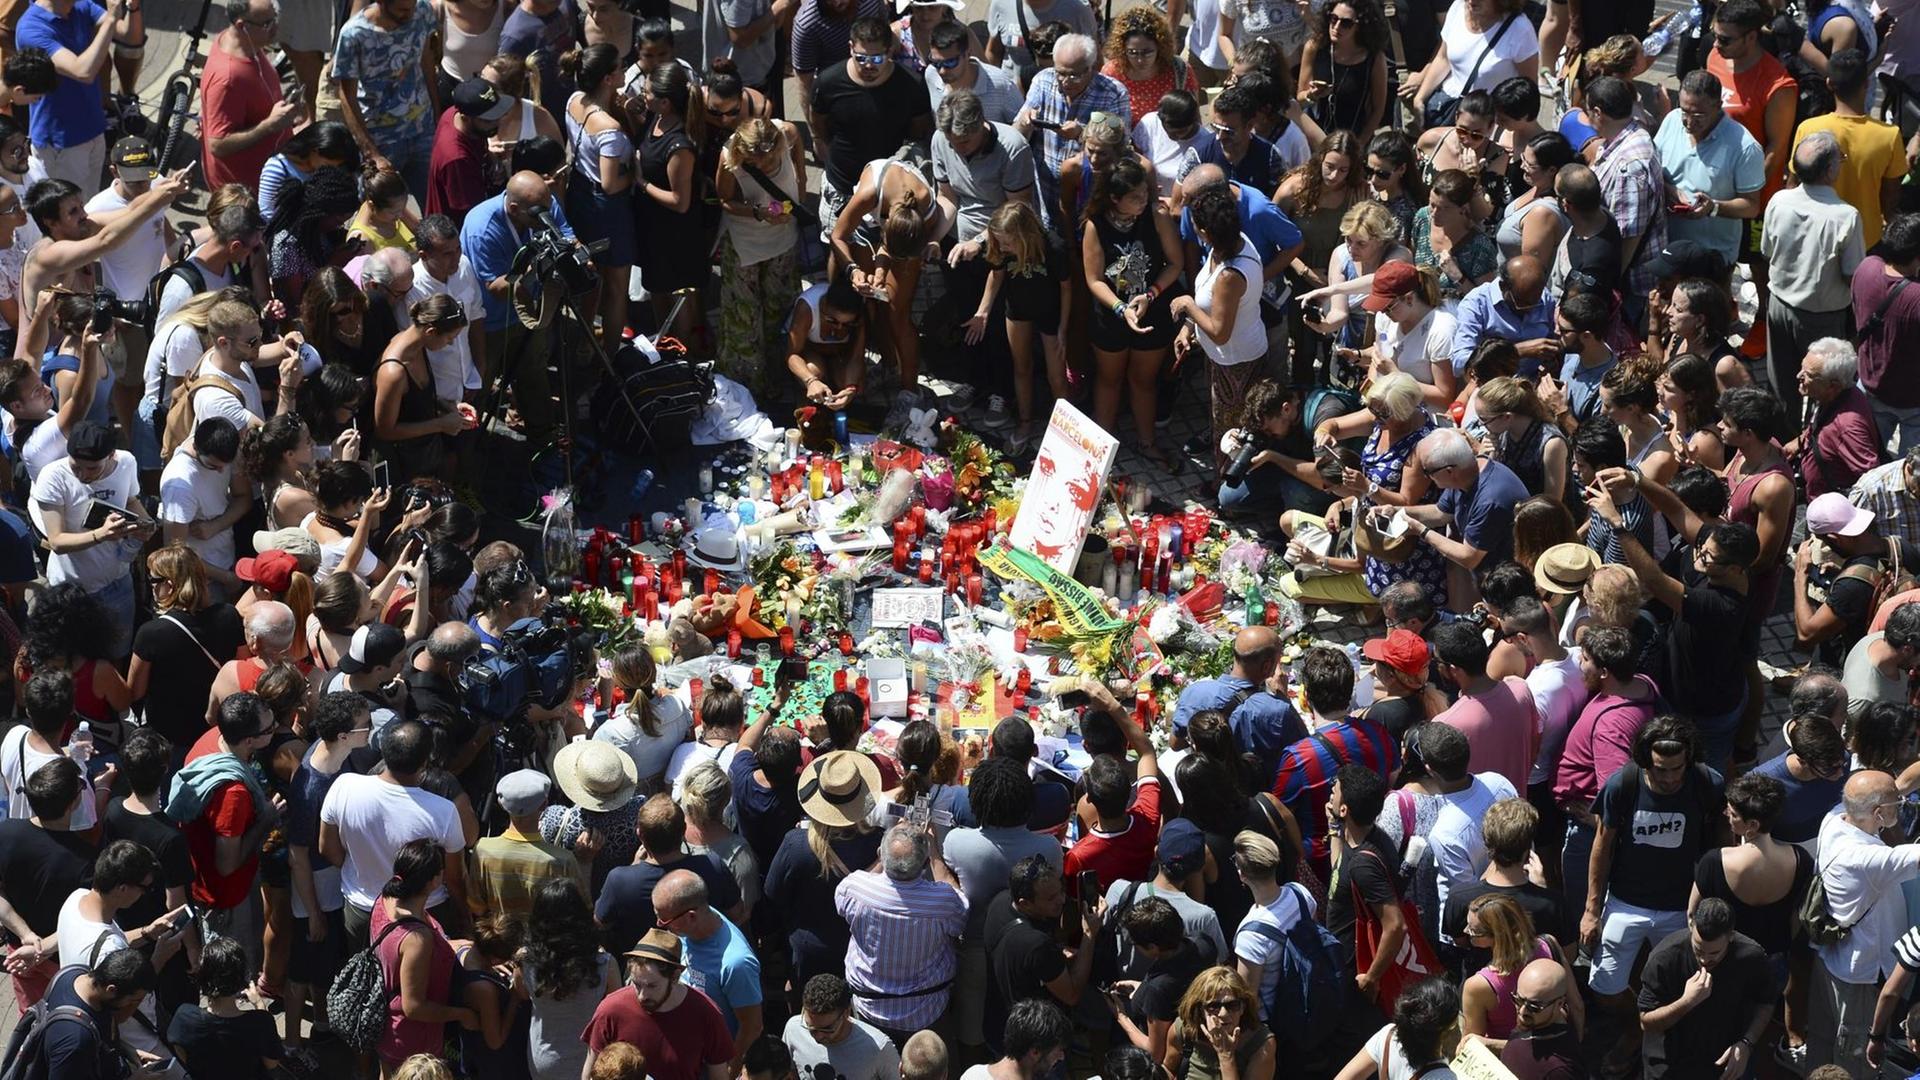 Menschen legen am Tatort in Barcelona Blumen, Plüschtiere und viele andere Dinge nieder, um der Toten der Anschläge zu gedenken.